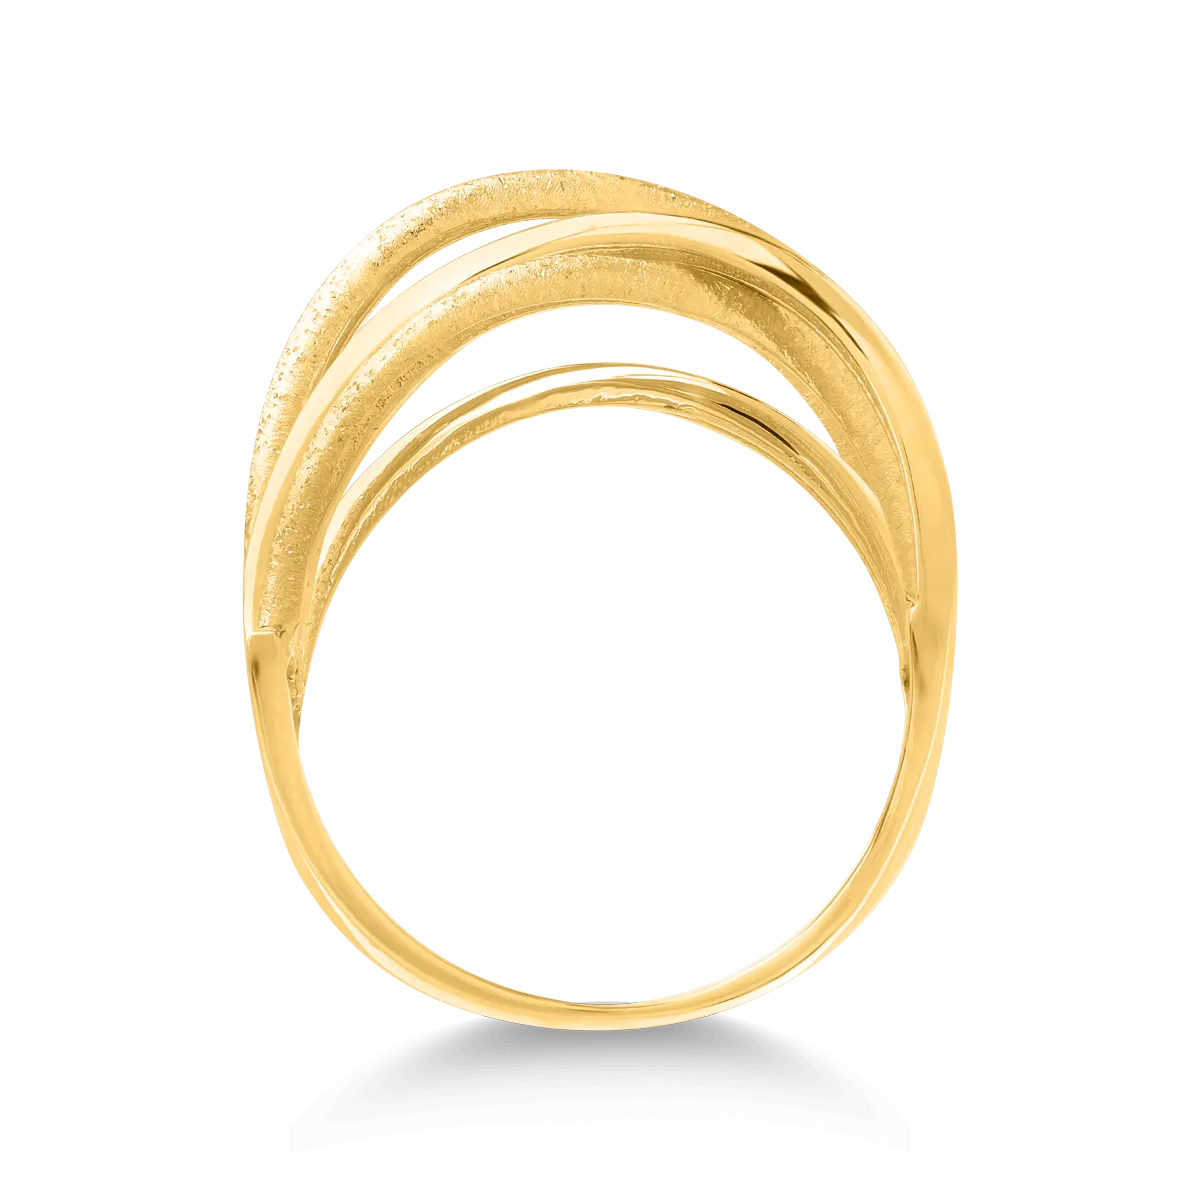 14k yellow gold ring